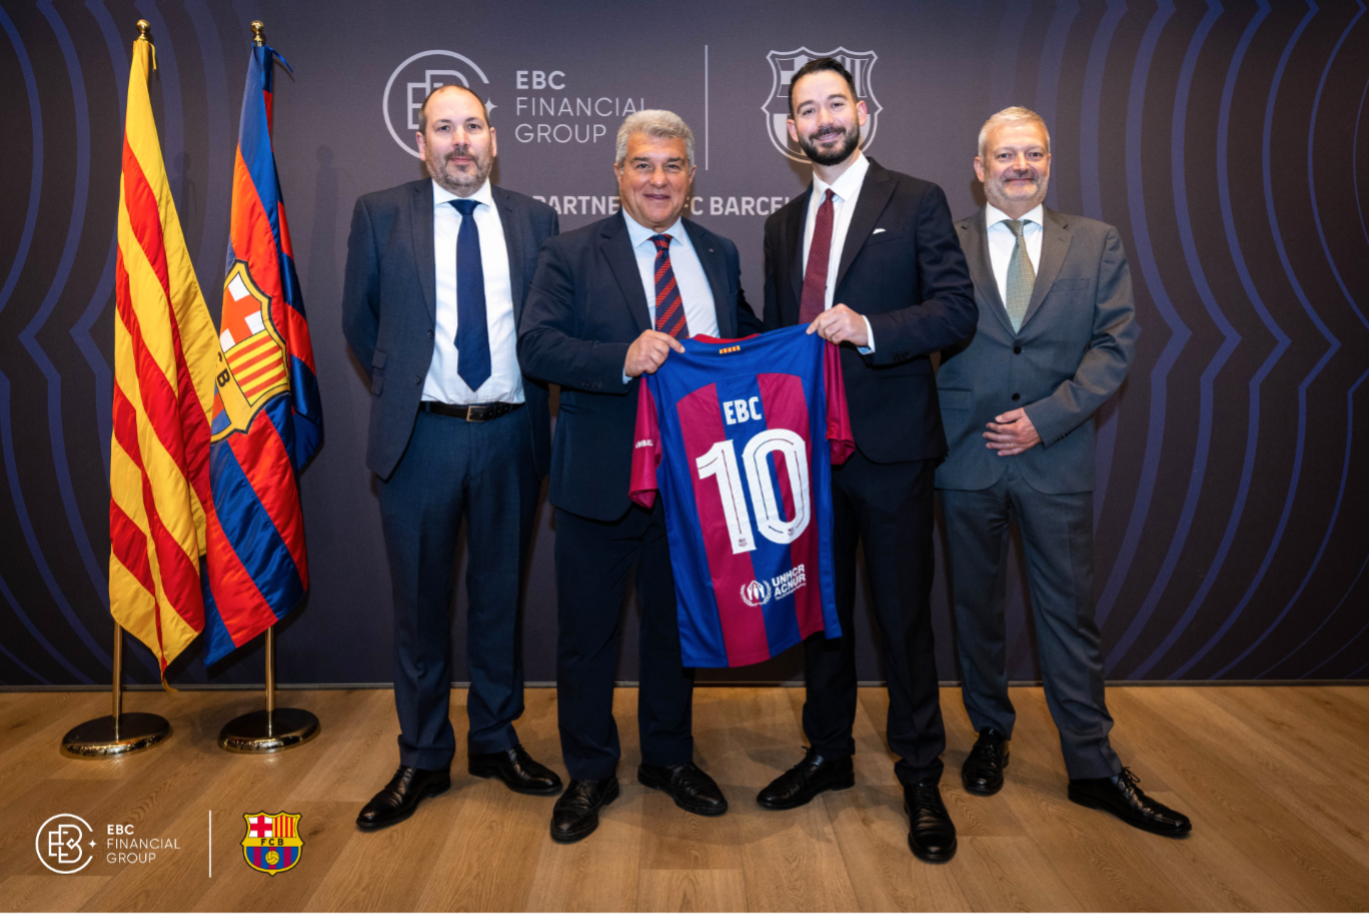 EBC Financial Group và FC Barcelona, cùng với Chủ tịch Joan Laporta, ăn mừng sự kết hợp của tài chính và bóng đá với nghi thức trao đổi áo đấu.